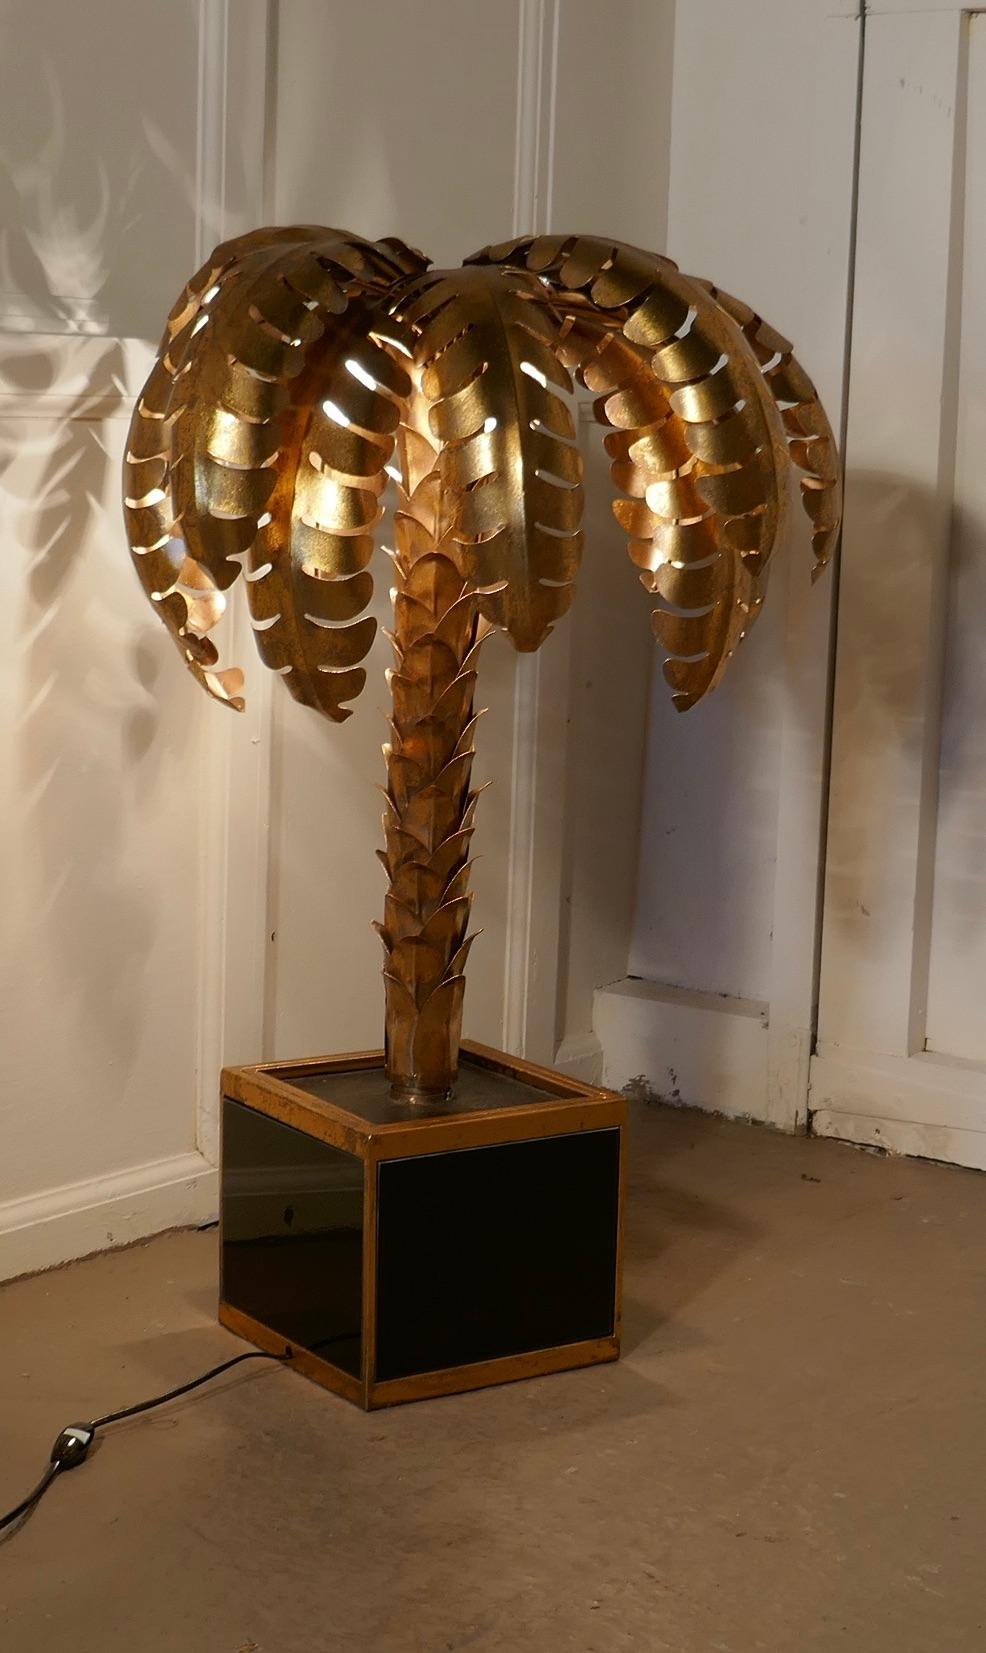 Lampe de table en faïence à palmier de style Mason Jansen 

Il s'agit d'un superbe design datant de 1970.

Cette lampe en faïence a une finition dorée et présente d'abondantes feuilles de palmier dentelées et enroulées en laiton surplombant un tronc